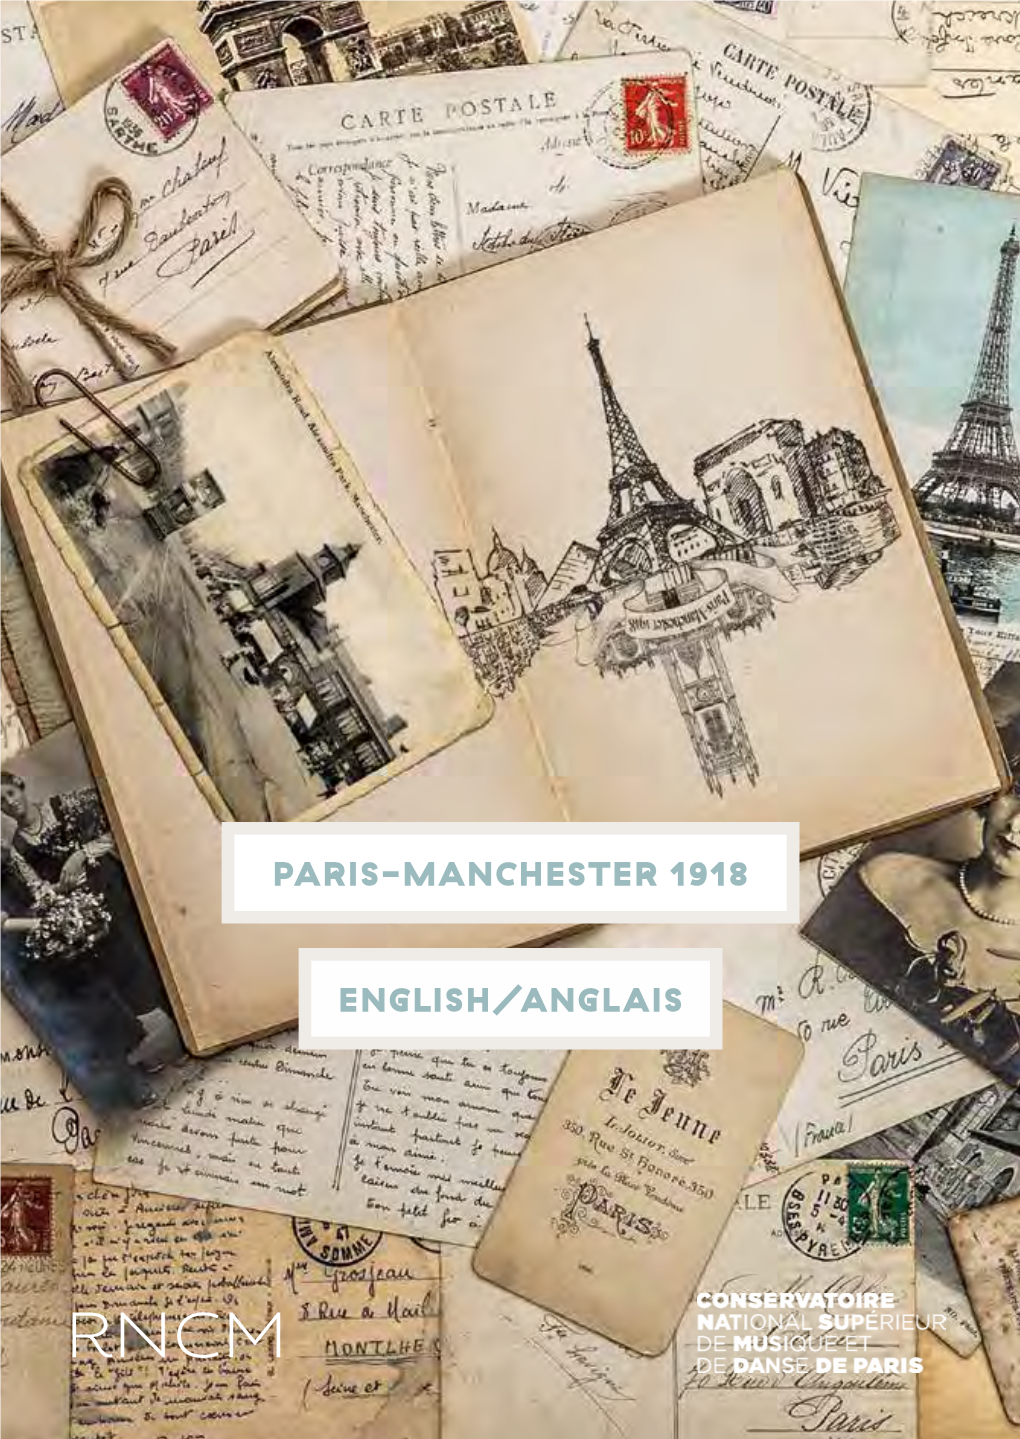 Paris-Manchester 1918 English/Anglais